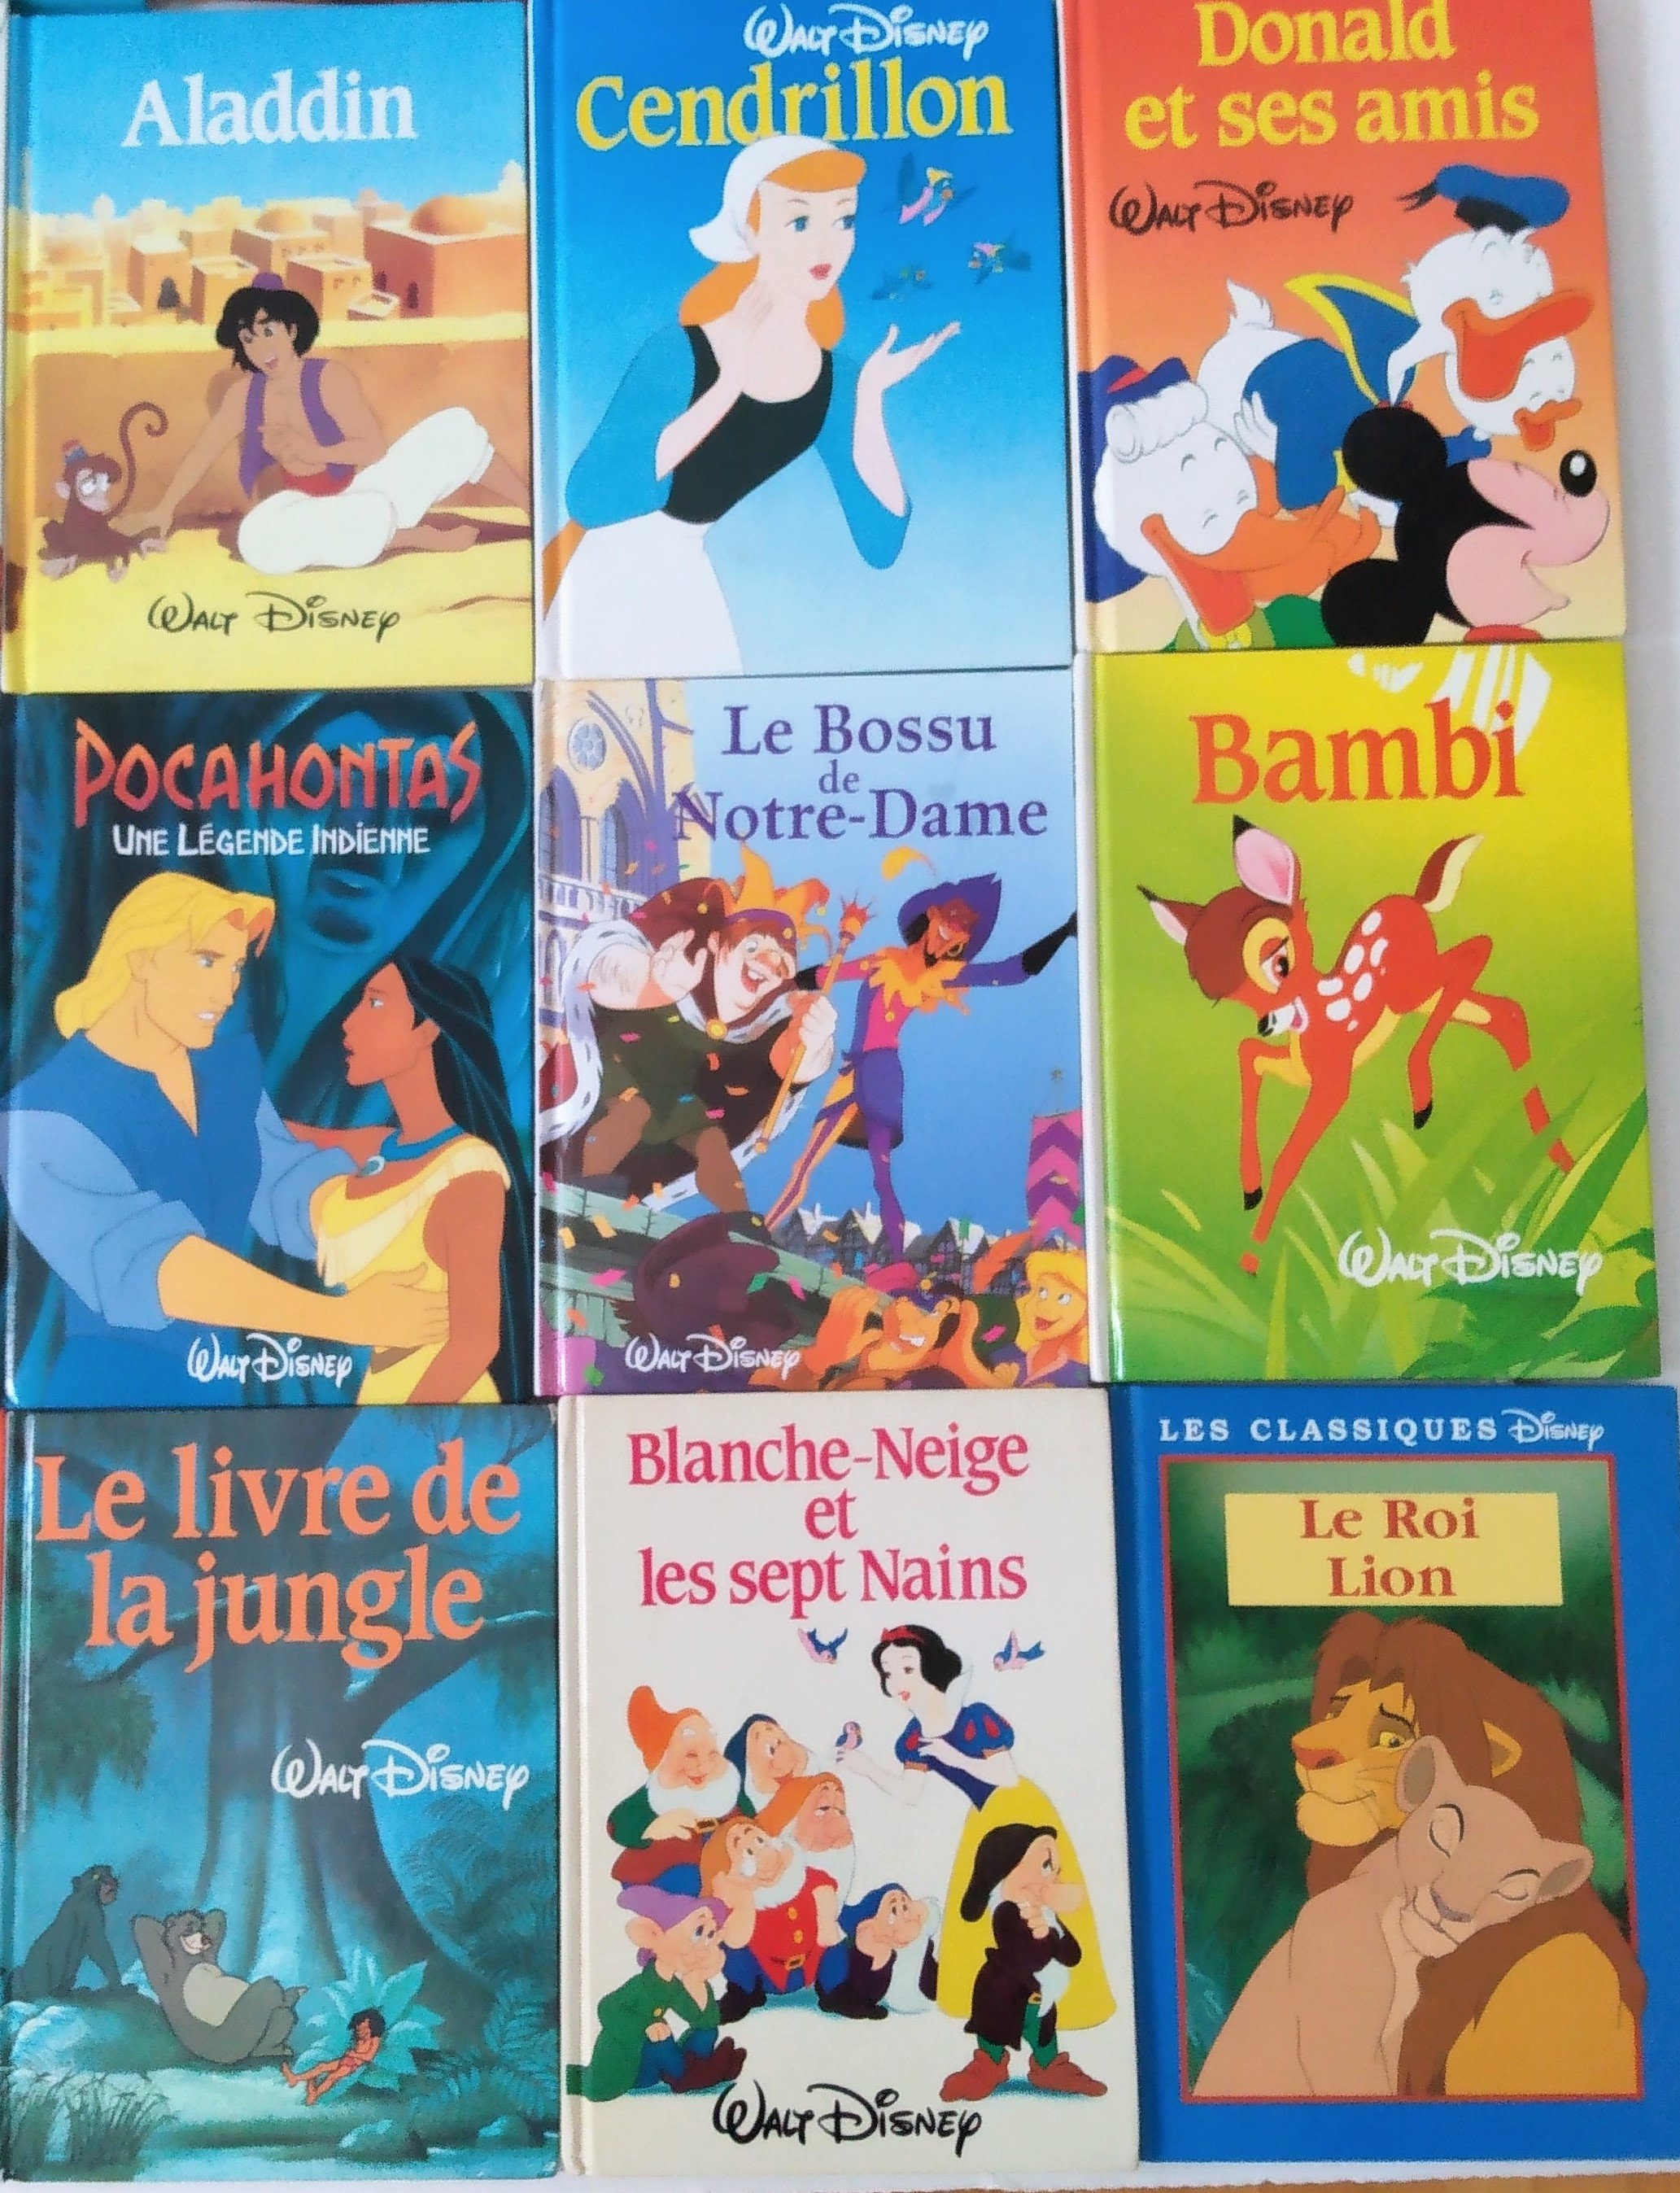 Le Roi Lion - Disney club du livre - Book in French